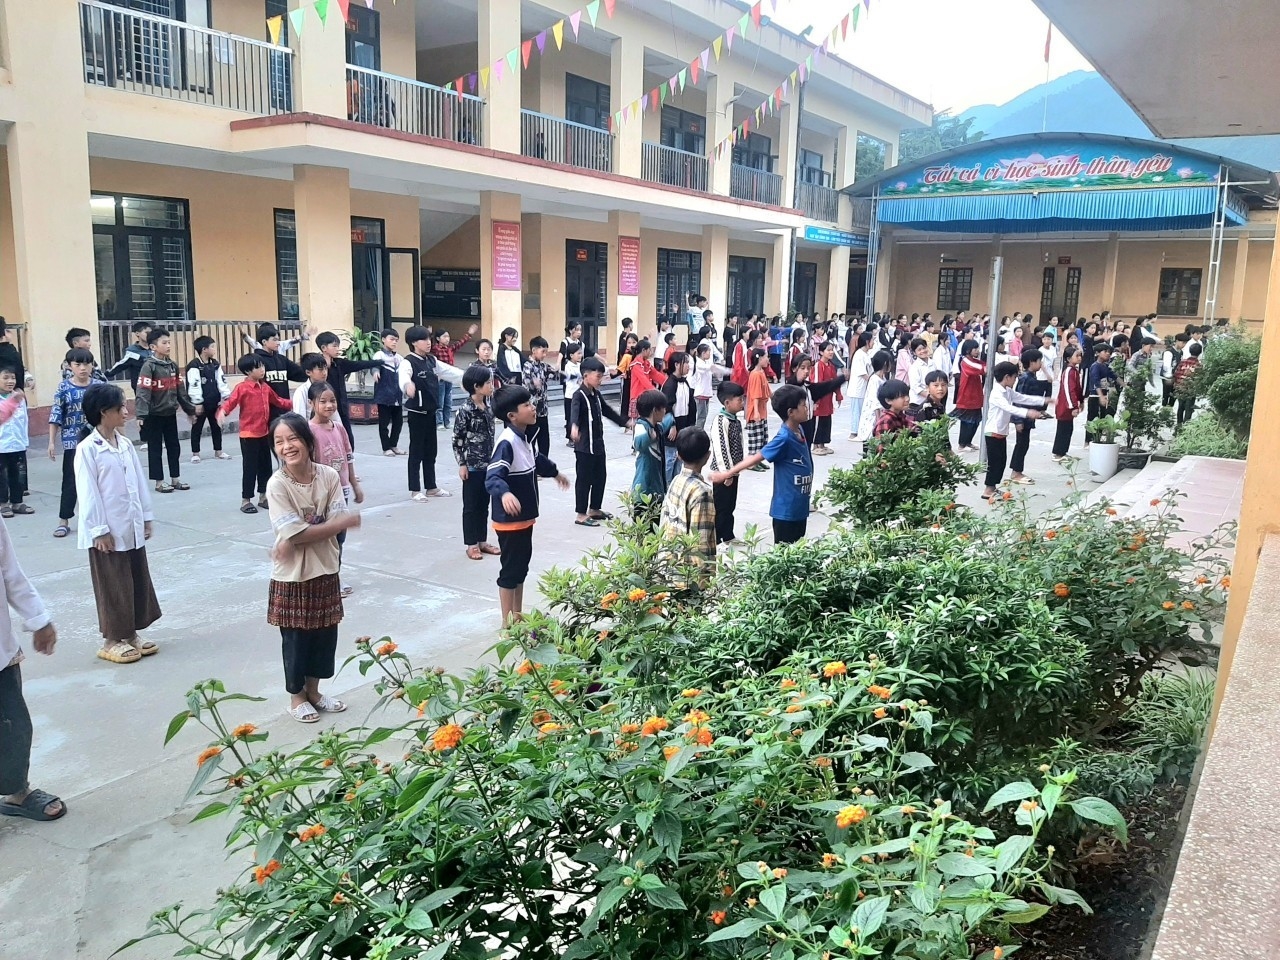 Trường Phổ thông Dân tộc Bán trú, THCS Cao Phạ, huyện Mù Căng Chải được đầu tư khang trang. Hiện nhà trường có 534 học sinh, trong đó có 532 học sinh là người DTTS